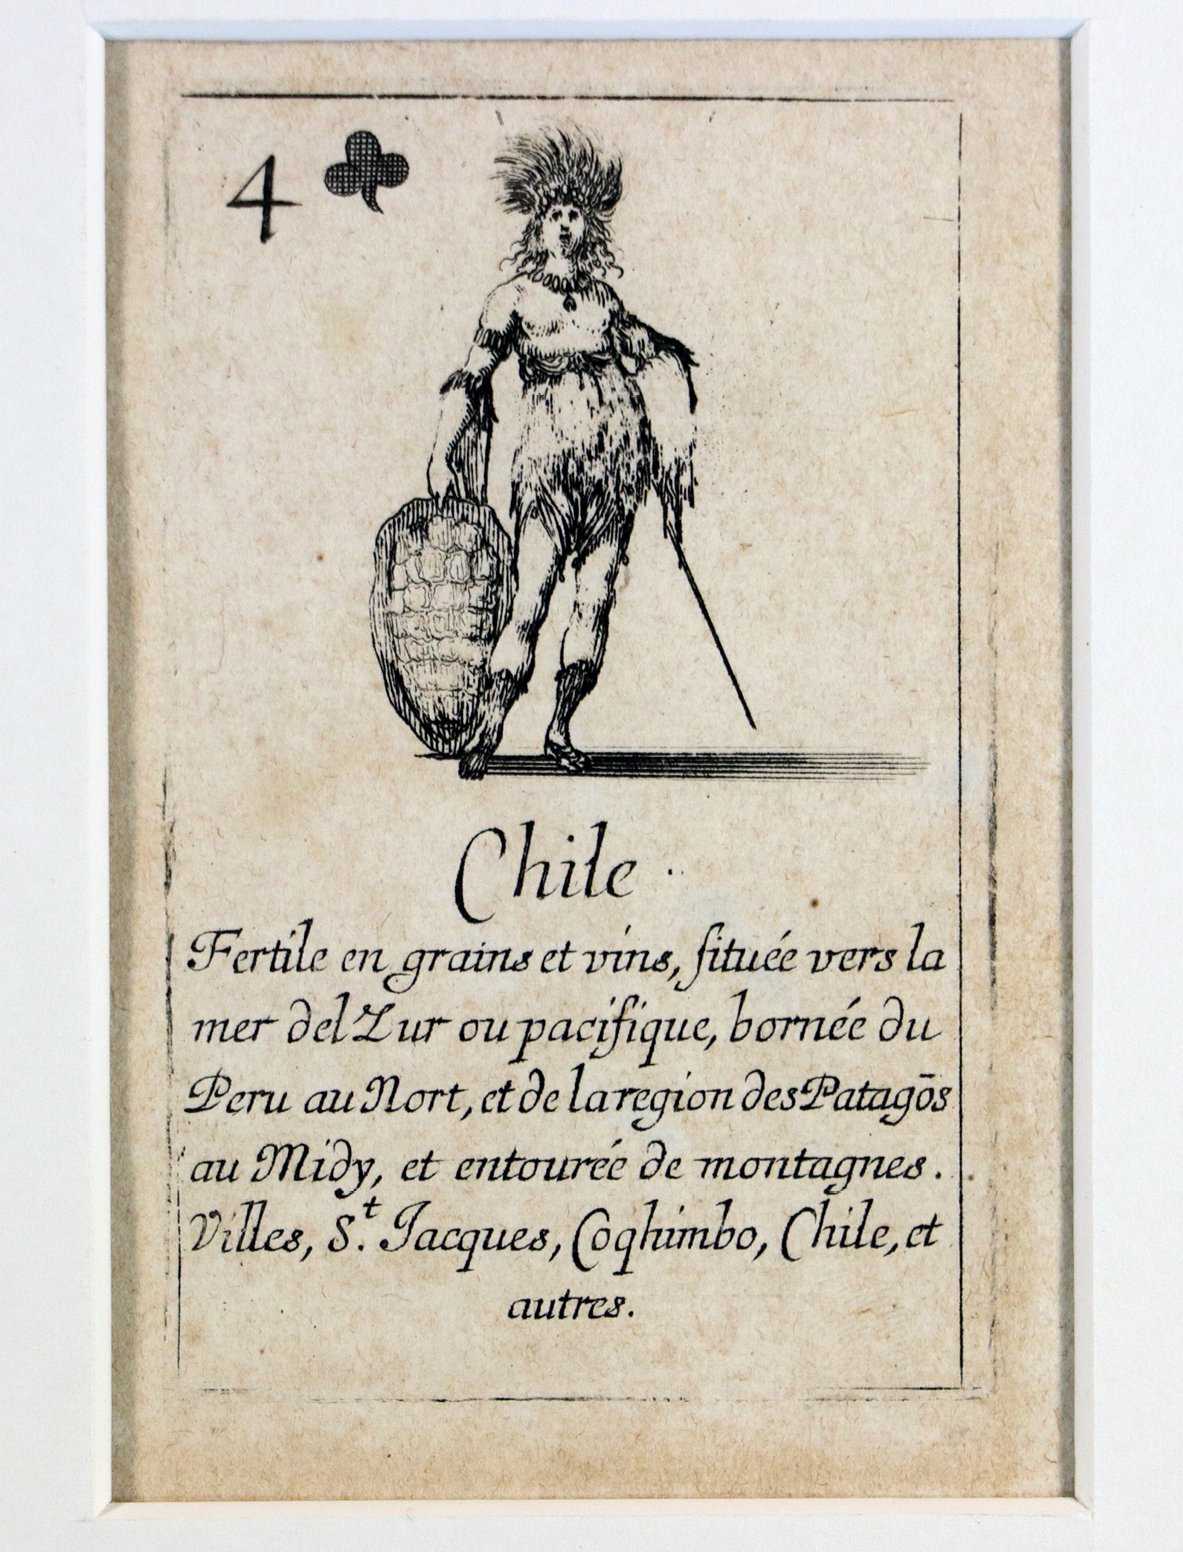 Stefano della Bella (1610 - 1664), Kartenspiel "Jeu de la Geographie", 52 Karten und ein Titelblatt umfassend, Paris, 1644 (Städtisches Museum Schloss Rheydt CC0)